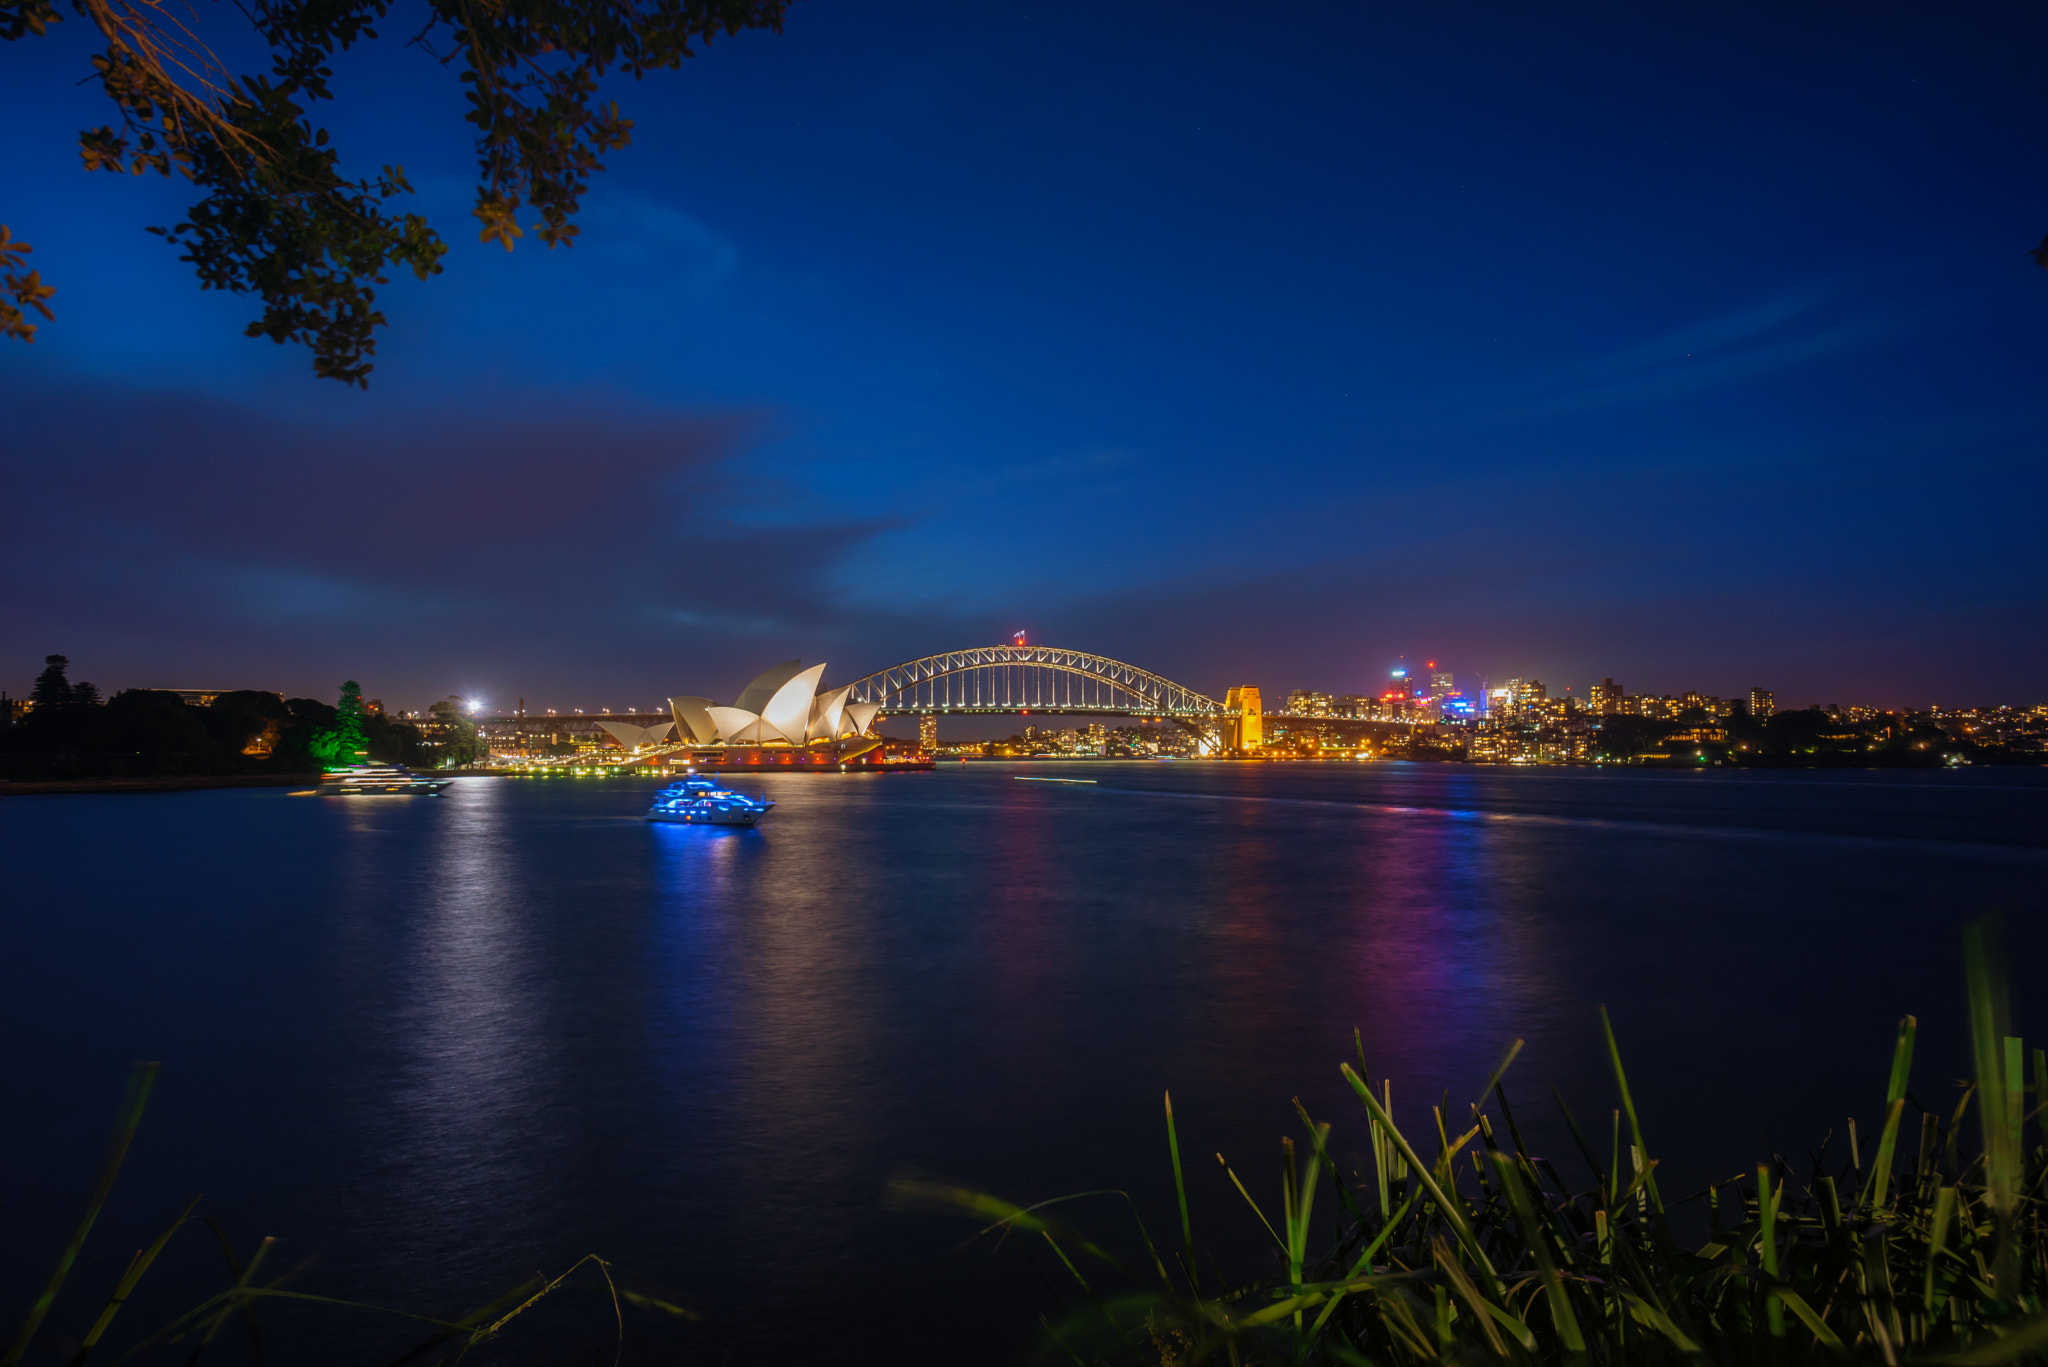 Sony a7R + Sony E 10-18mm F4 OSS sample photo. Illuminated sydney city at night photography